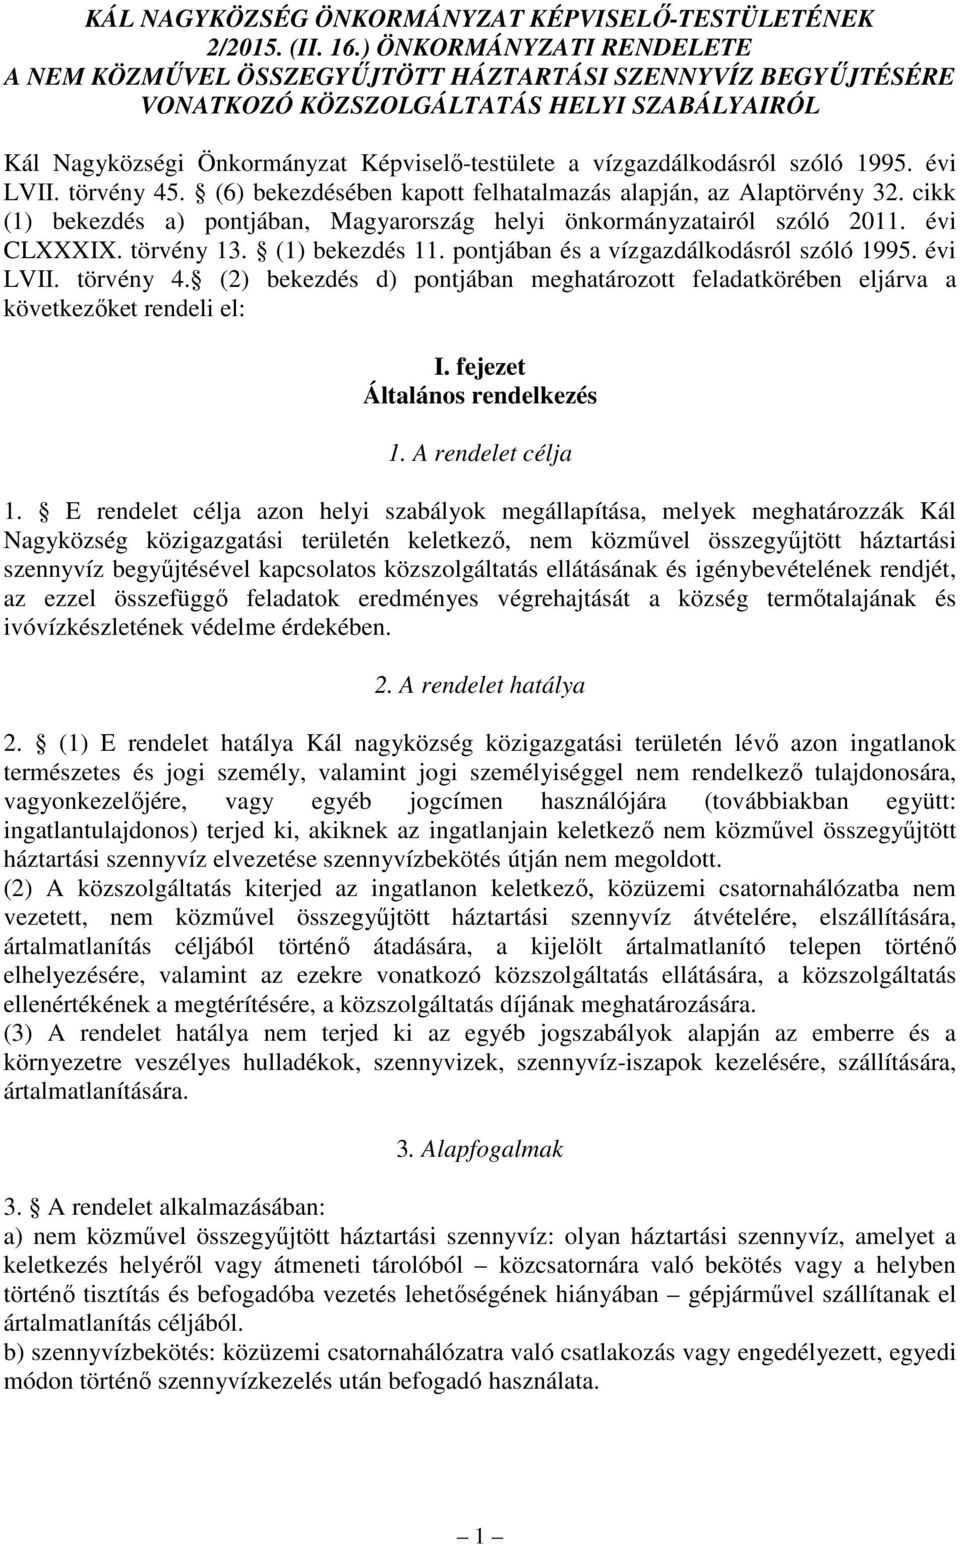 vízgazdálkodásról szóló 1995. évi LVII. törvény 45. (6) bekezdésében kapott felhatalmazás alapján, az Alaptörvény 32. cikk (1) bekezdés a) pontjában, Magyarország helyi önkormányzatairól szóló 2011.